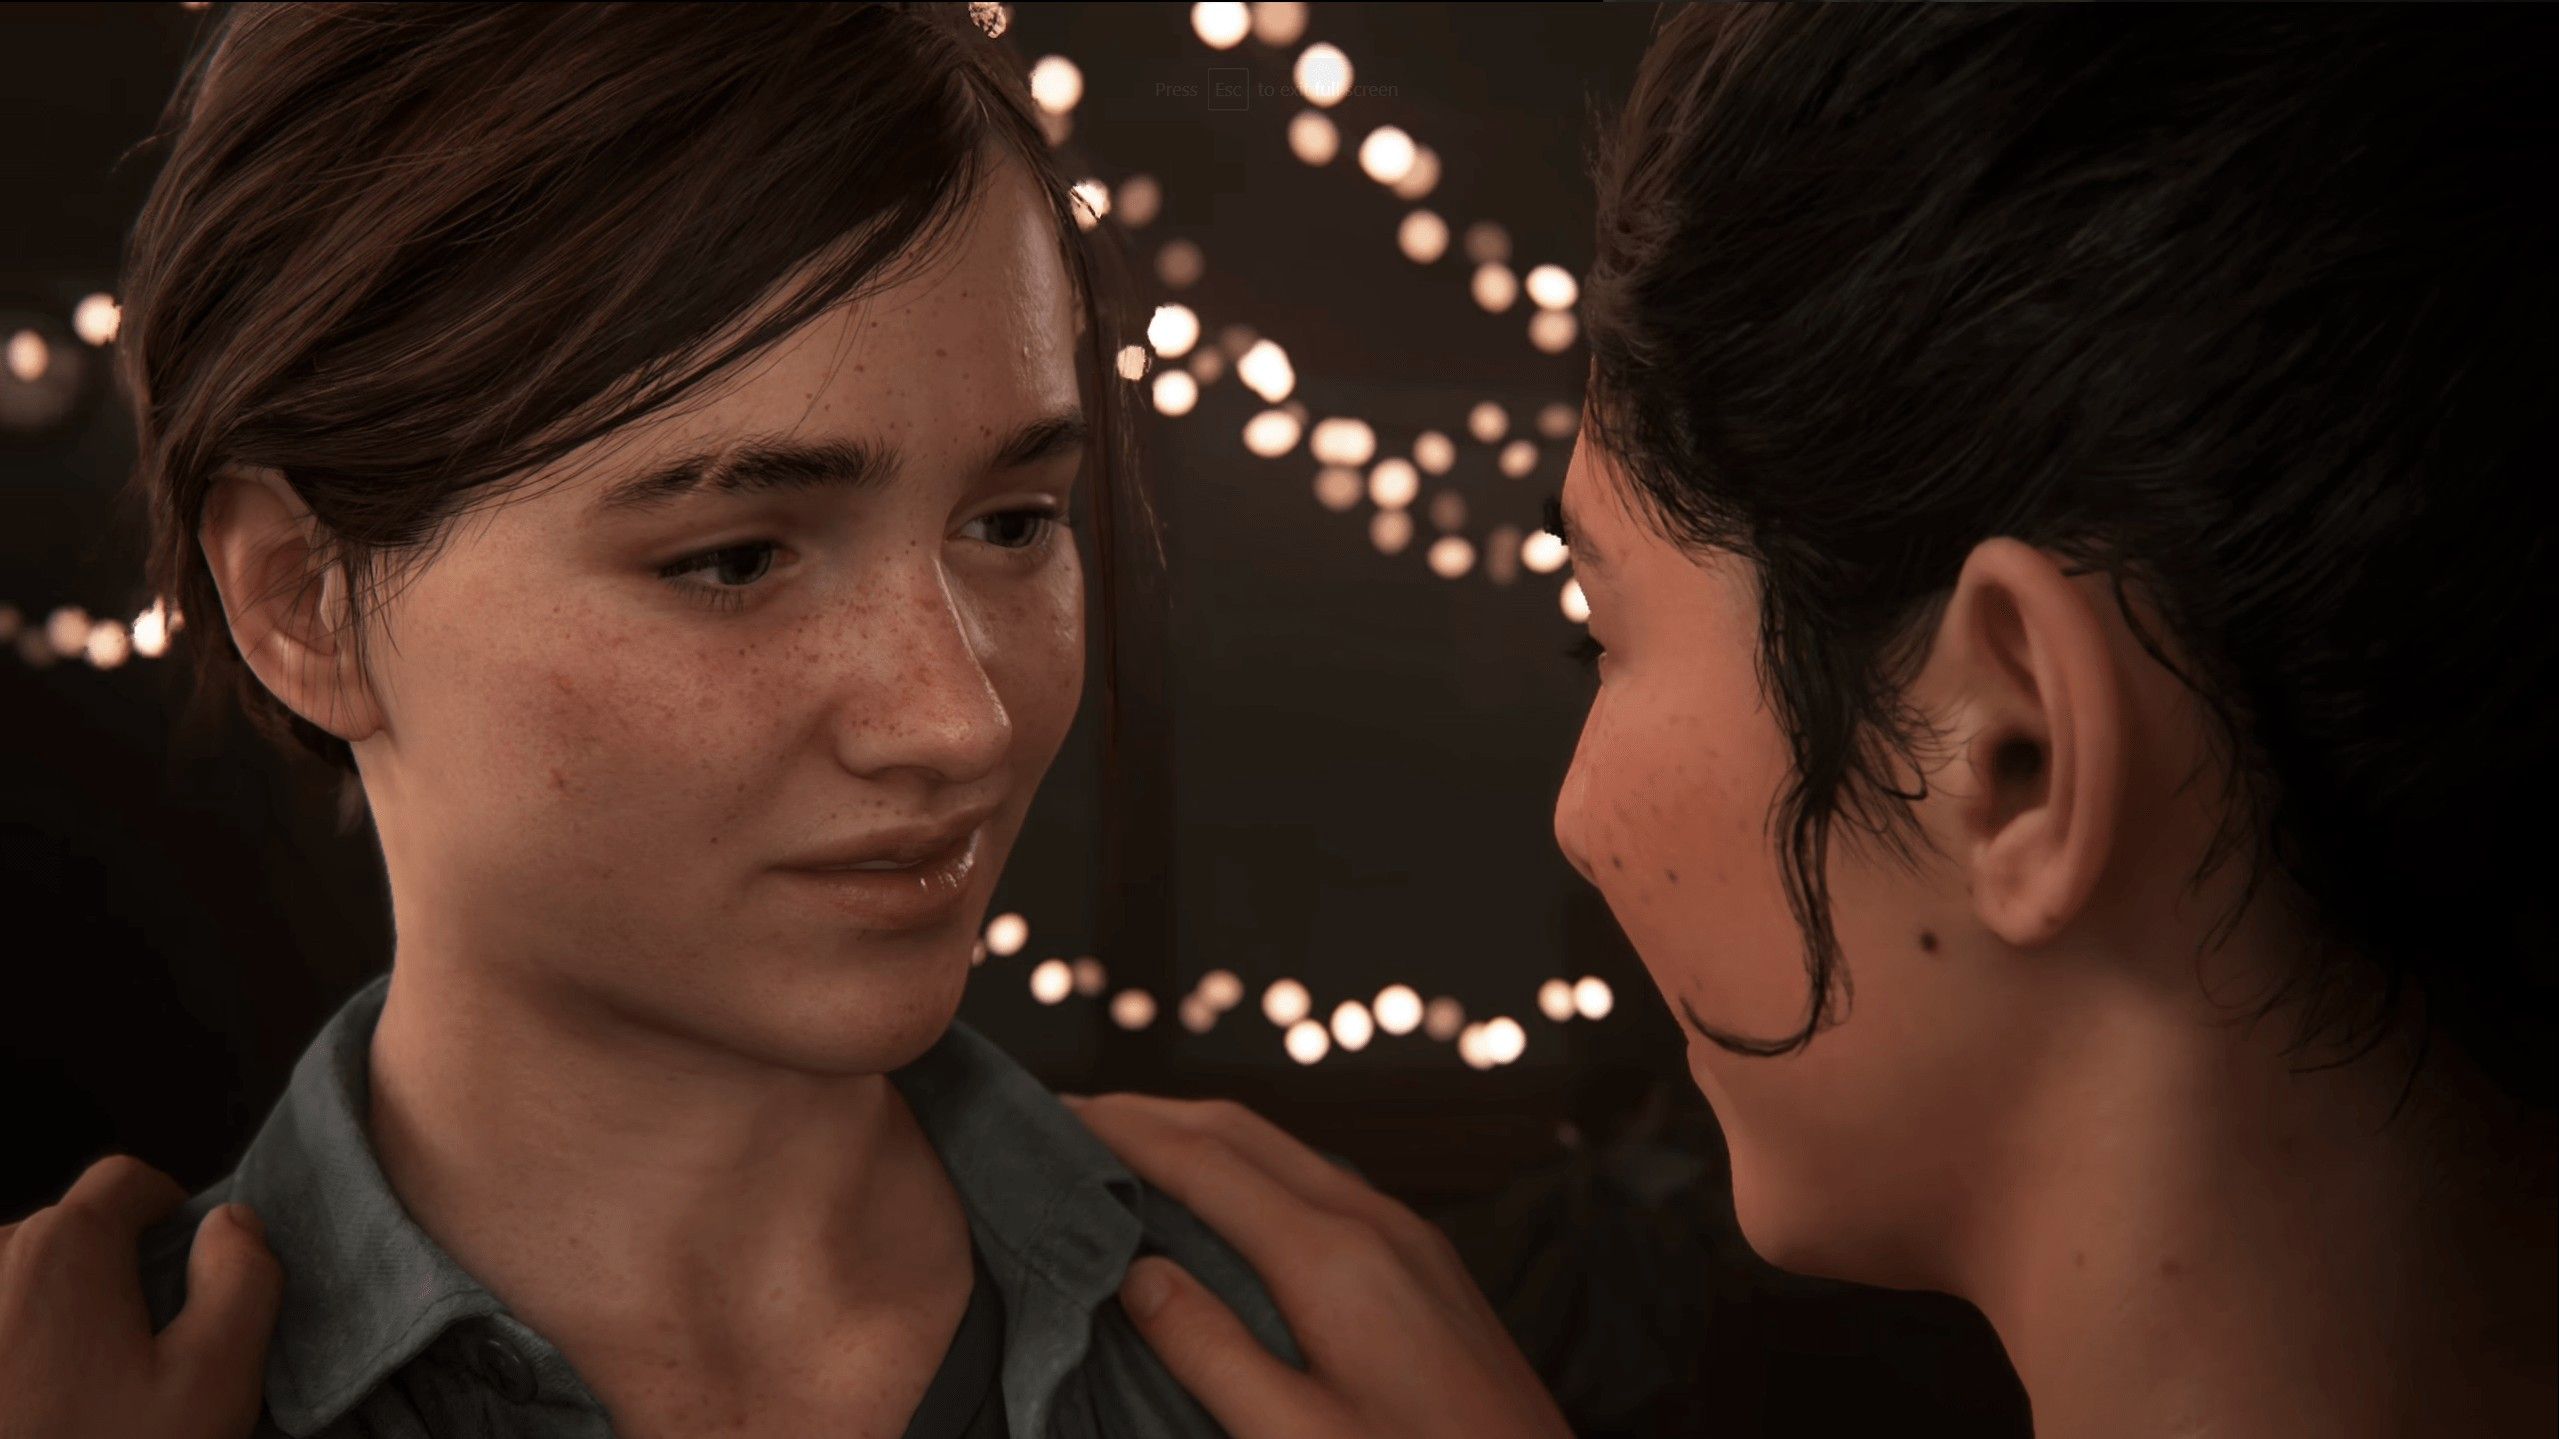 The Last of Us 2 tem quanto tempo de jogo? Veja perguntas e respostas